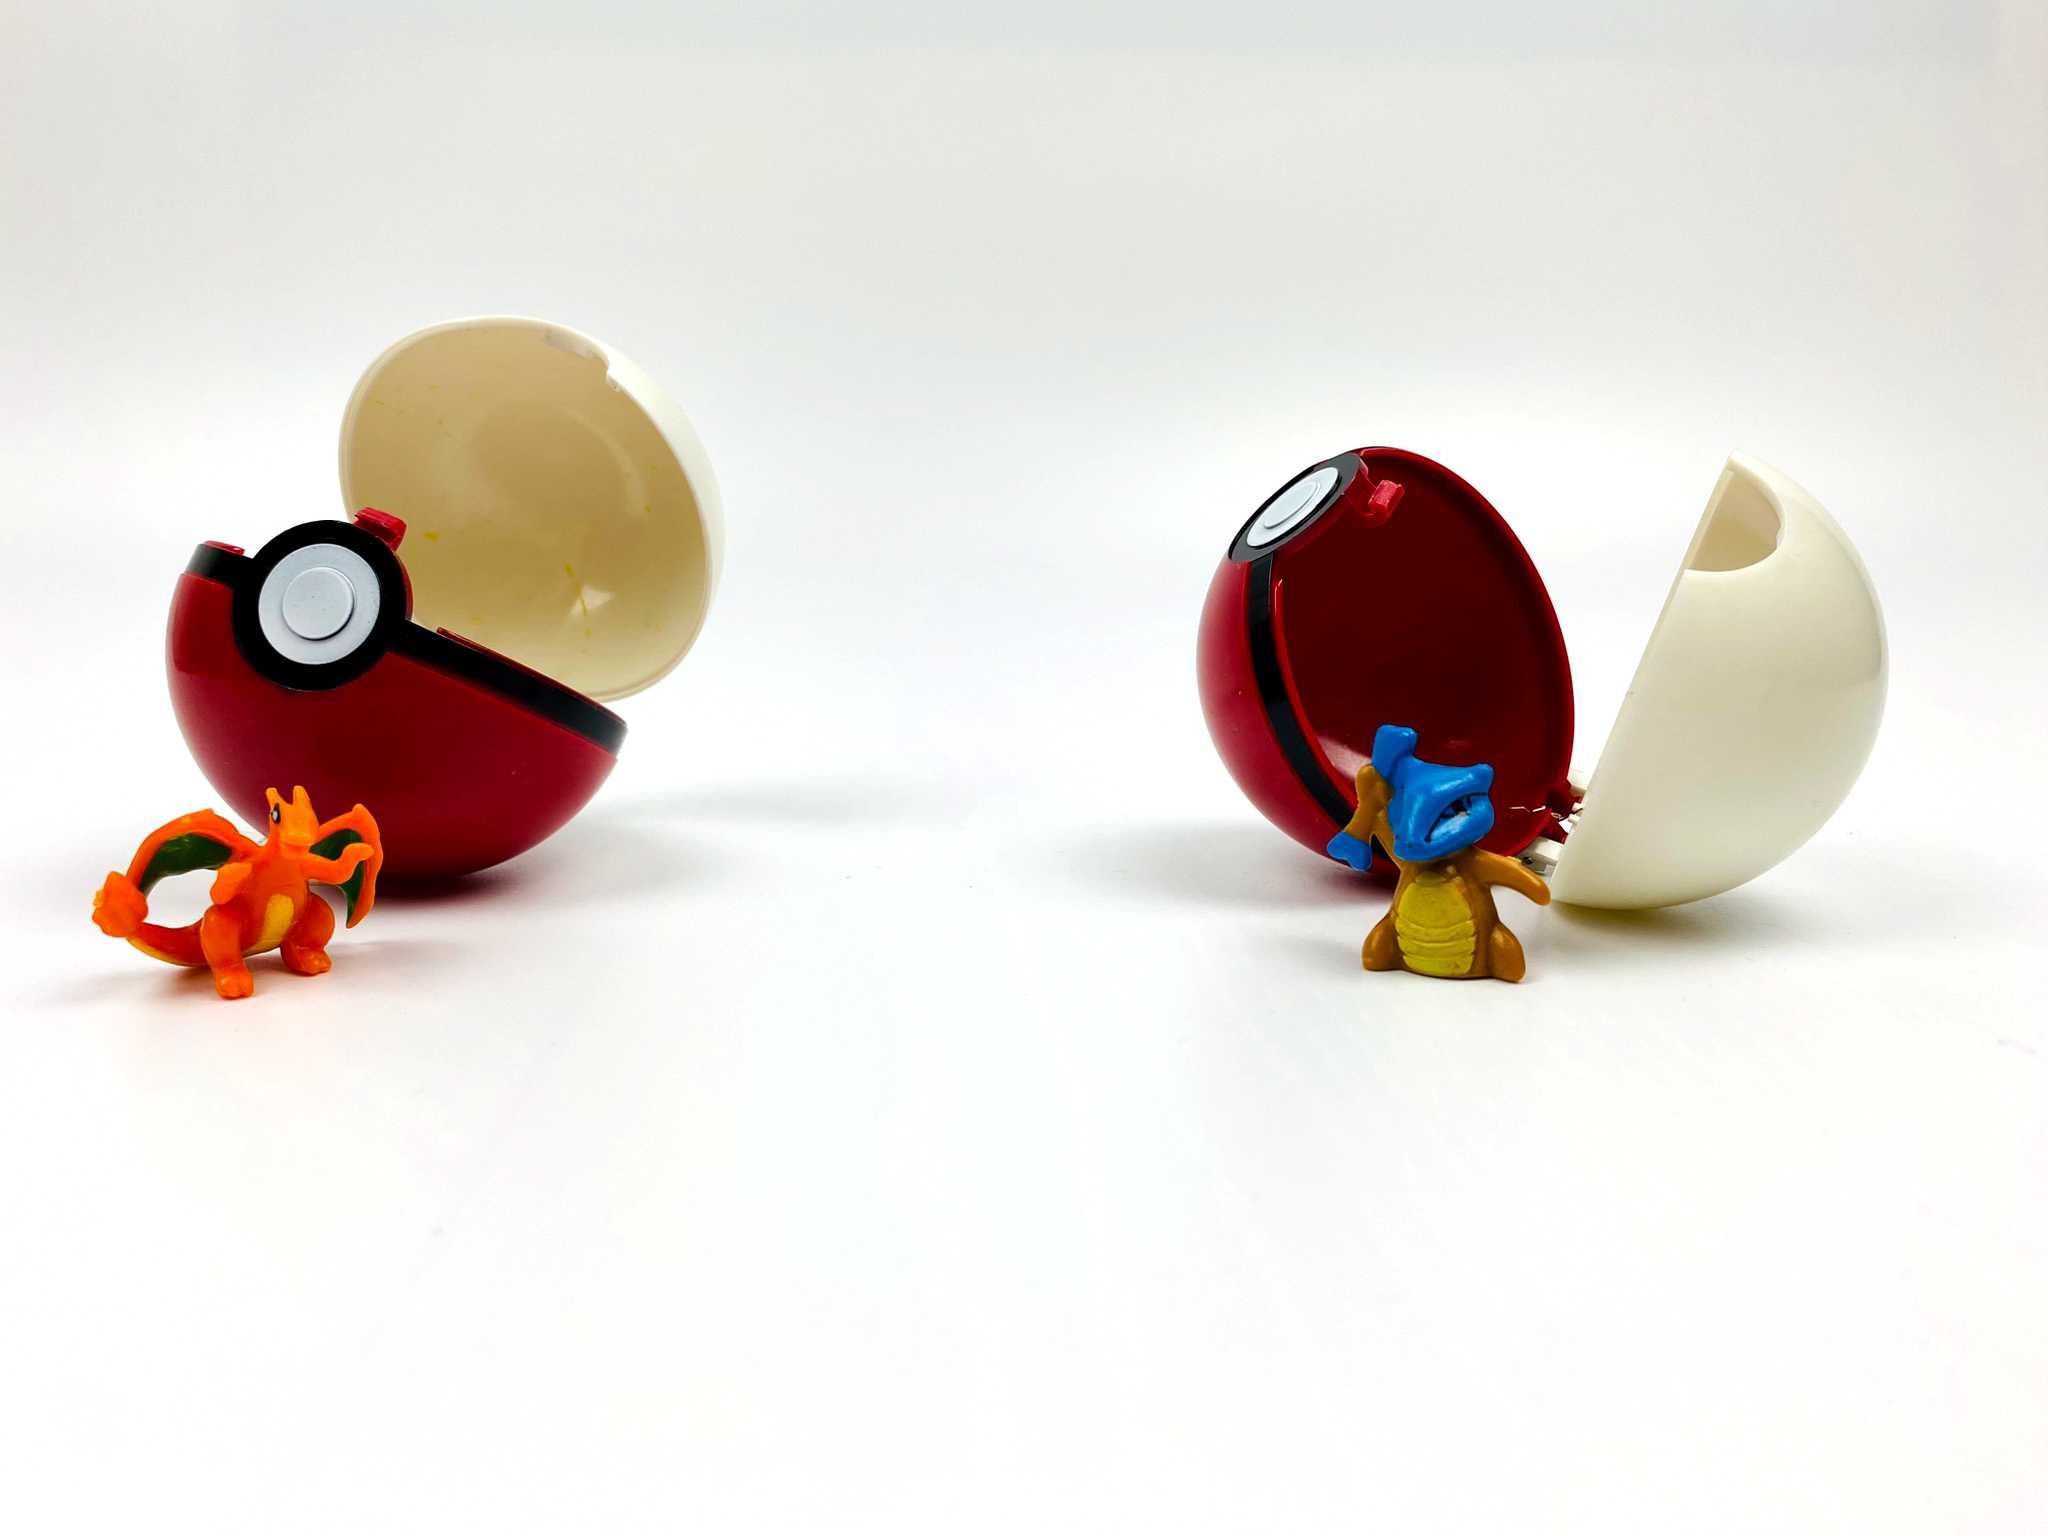 MEGA OKAZJA - Zestawik Dla Małego Kolekcjonera Pokemon 3w1 GRATIS